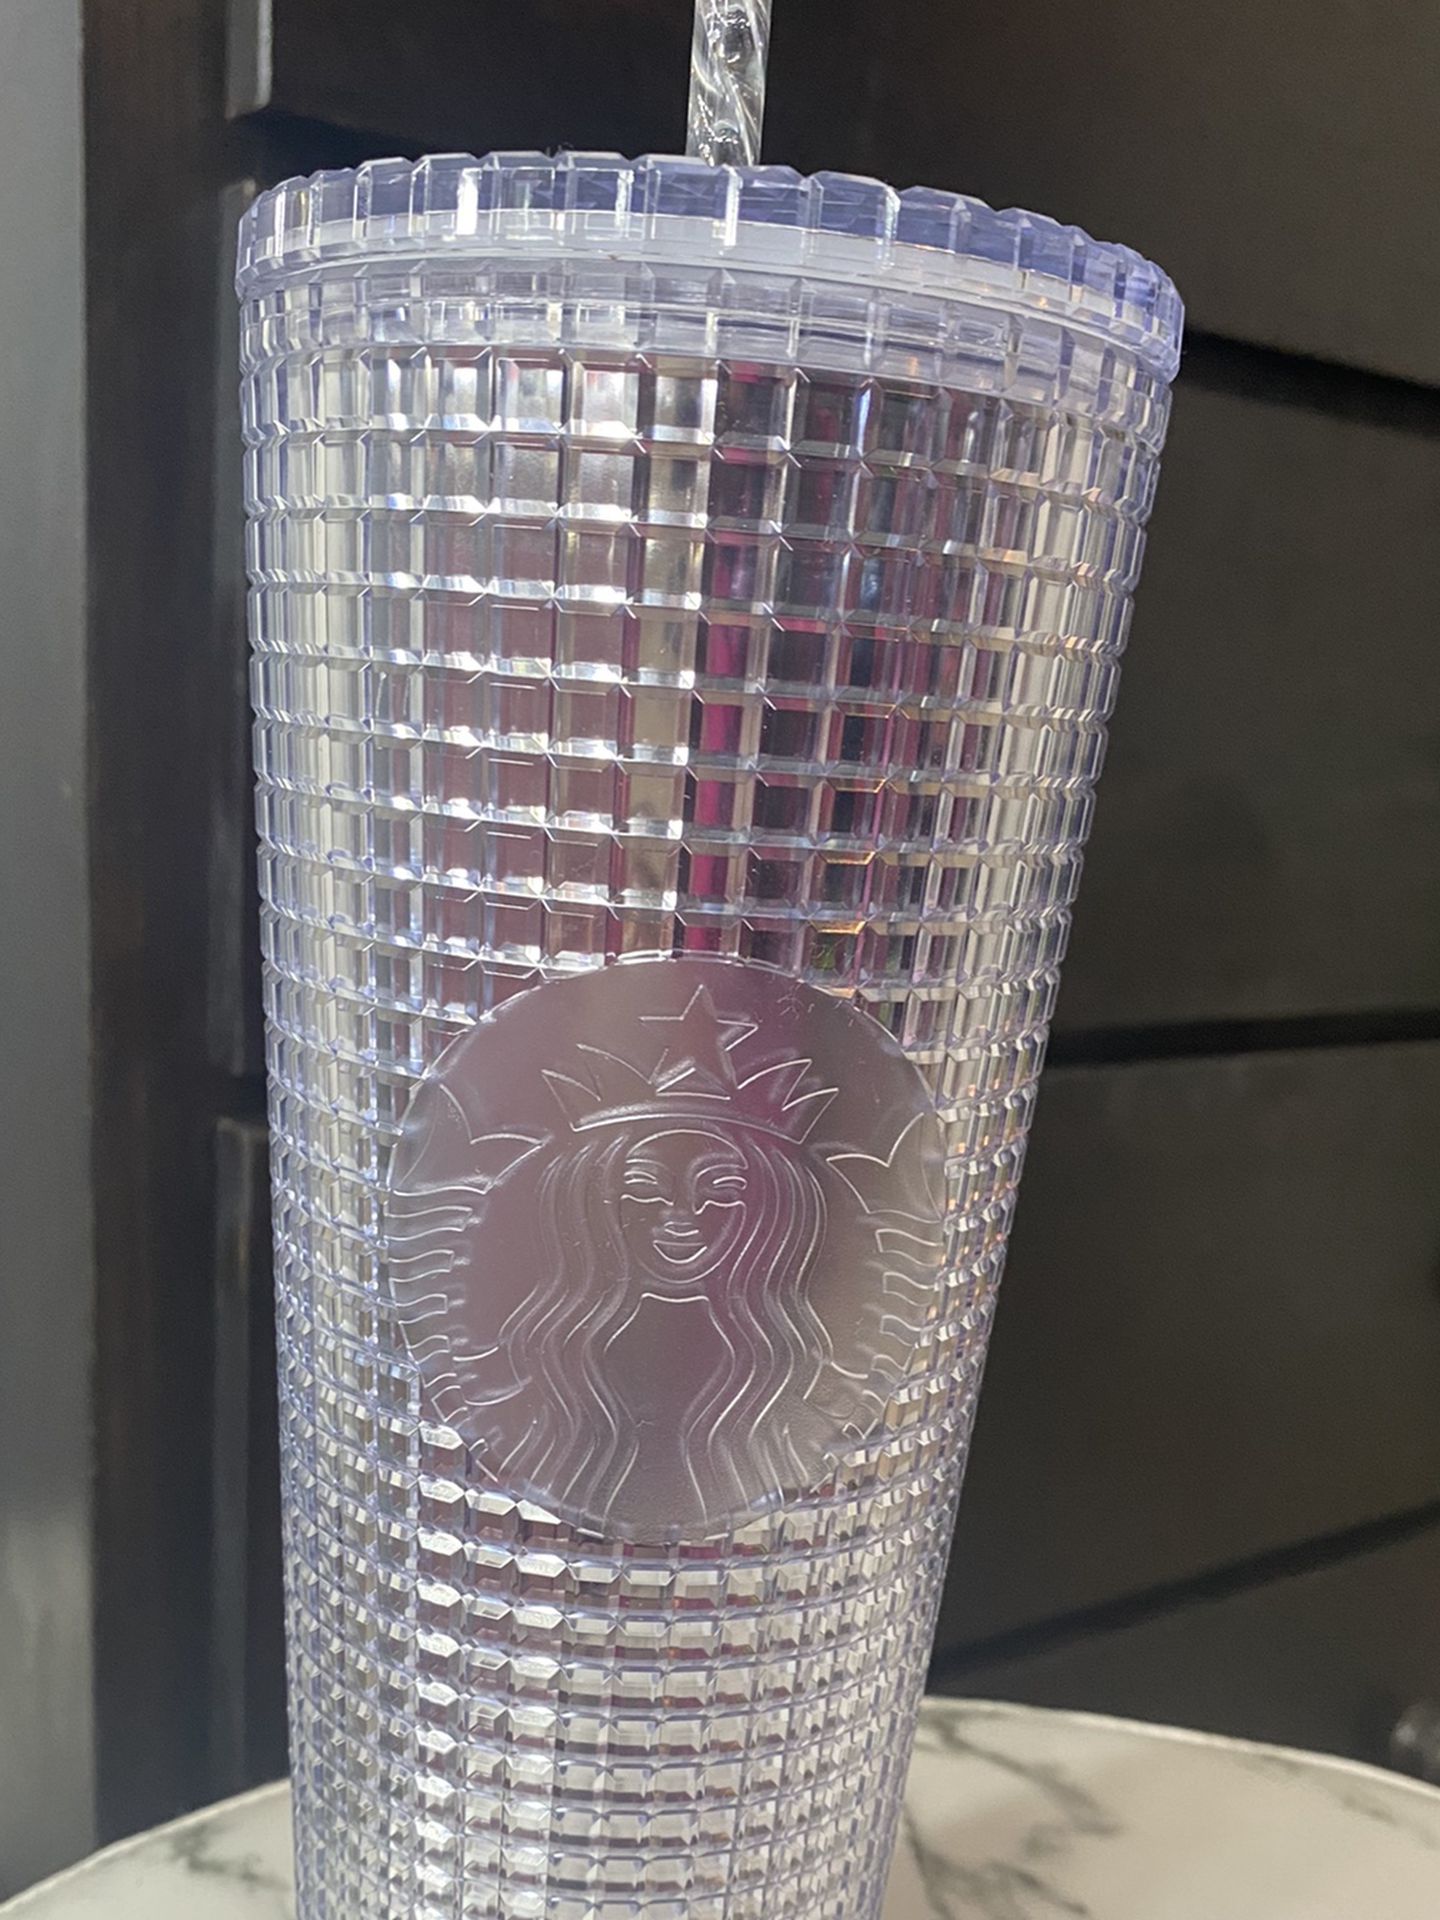 Starbucks Venti Cup